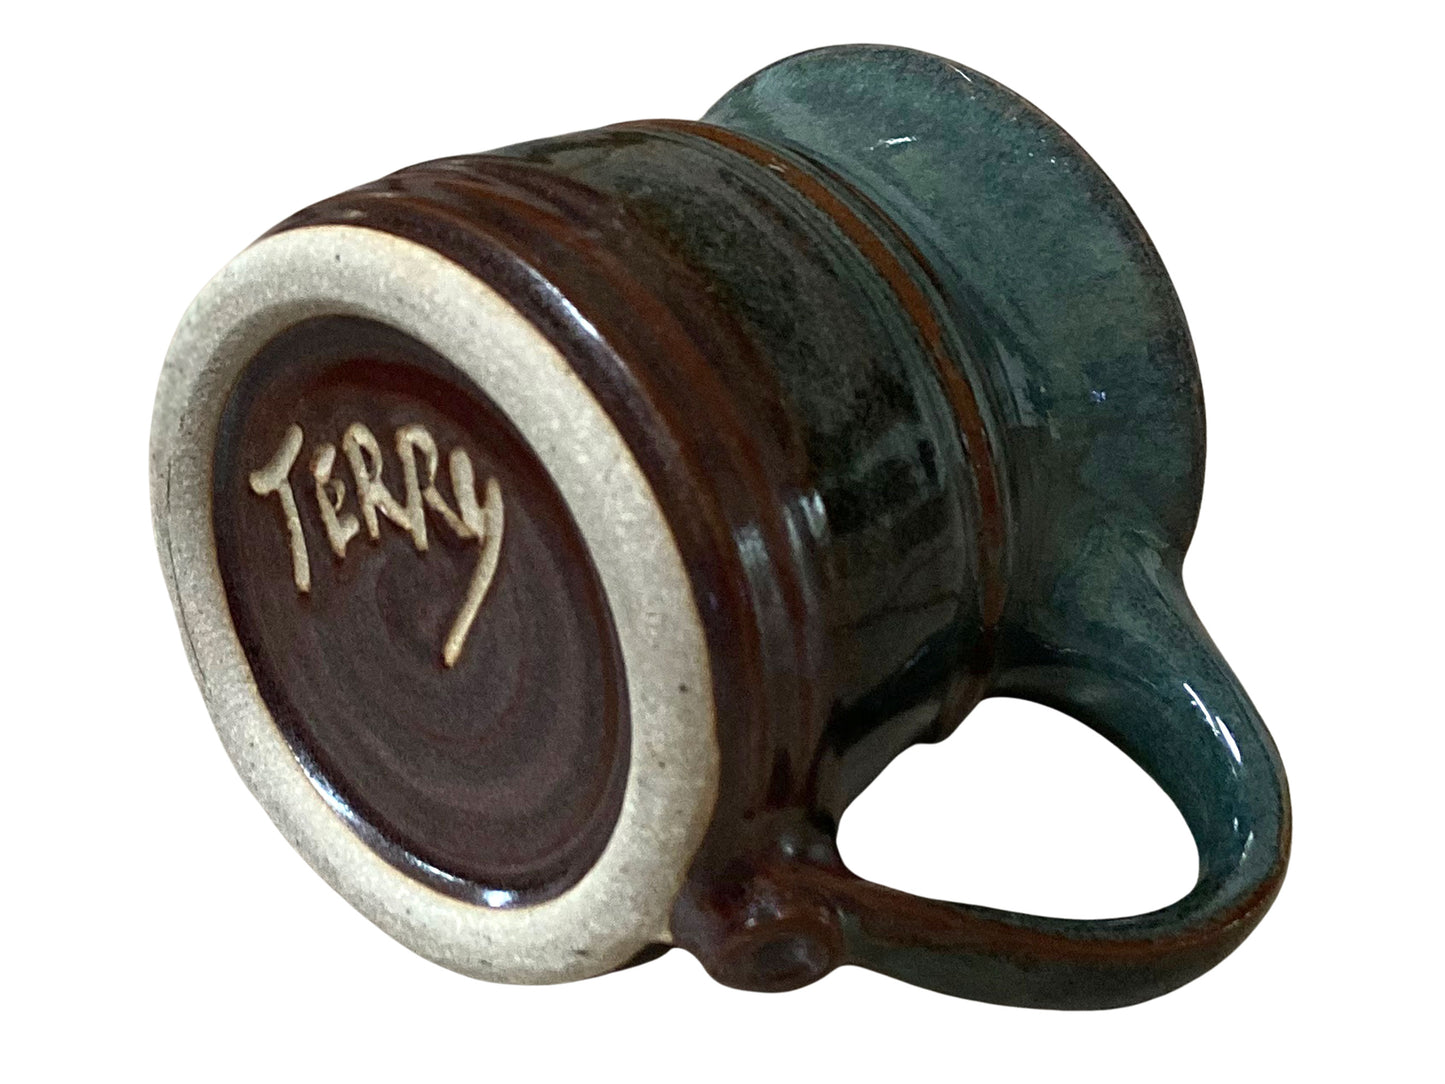 11 oz. Stoneware Coffee Mug